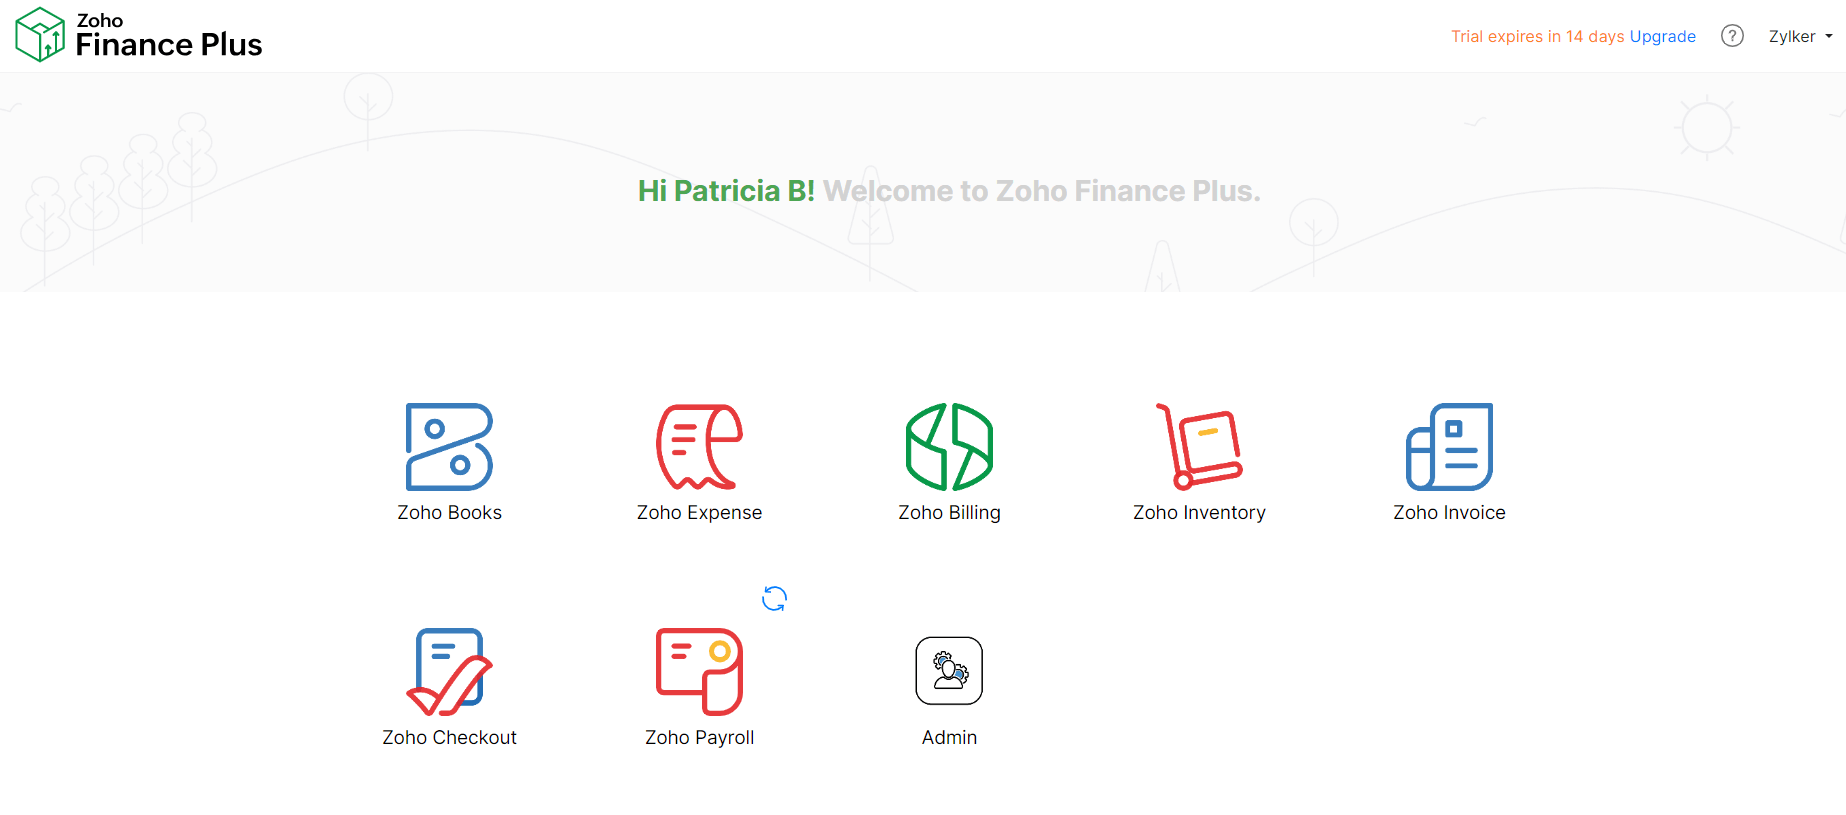 Zoho Finance Plus Home Page